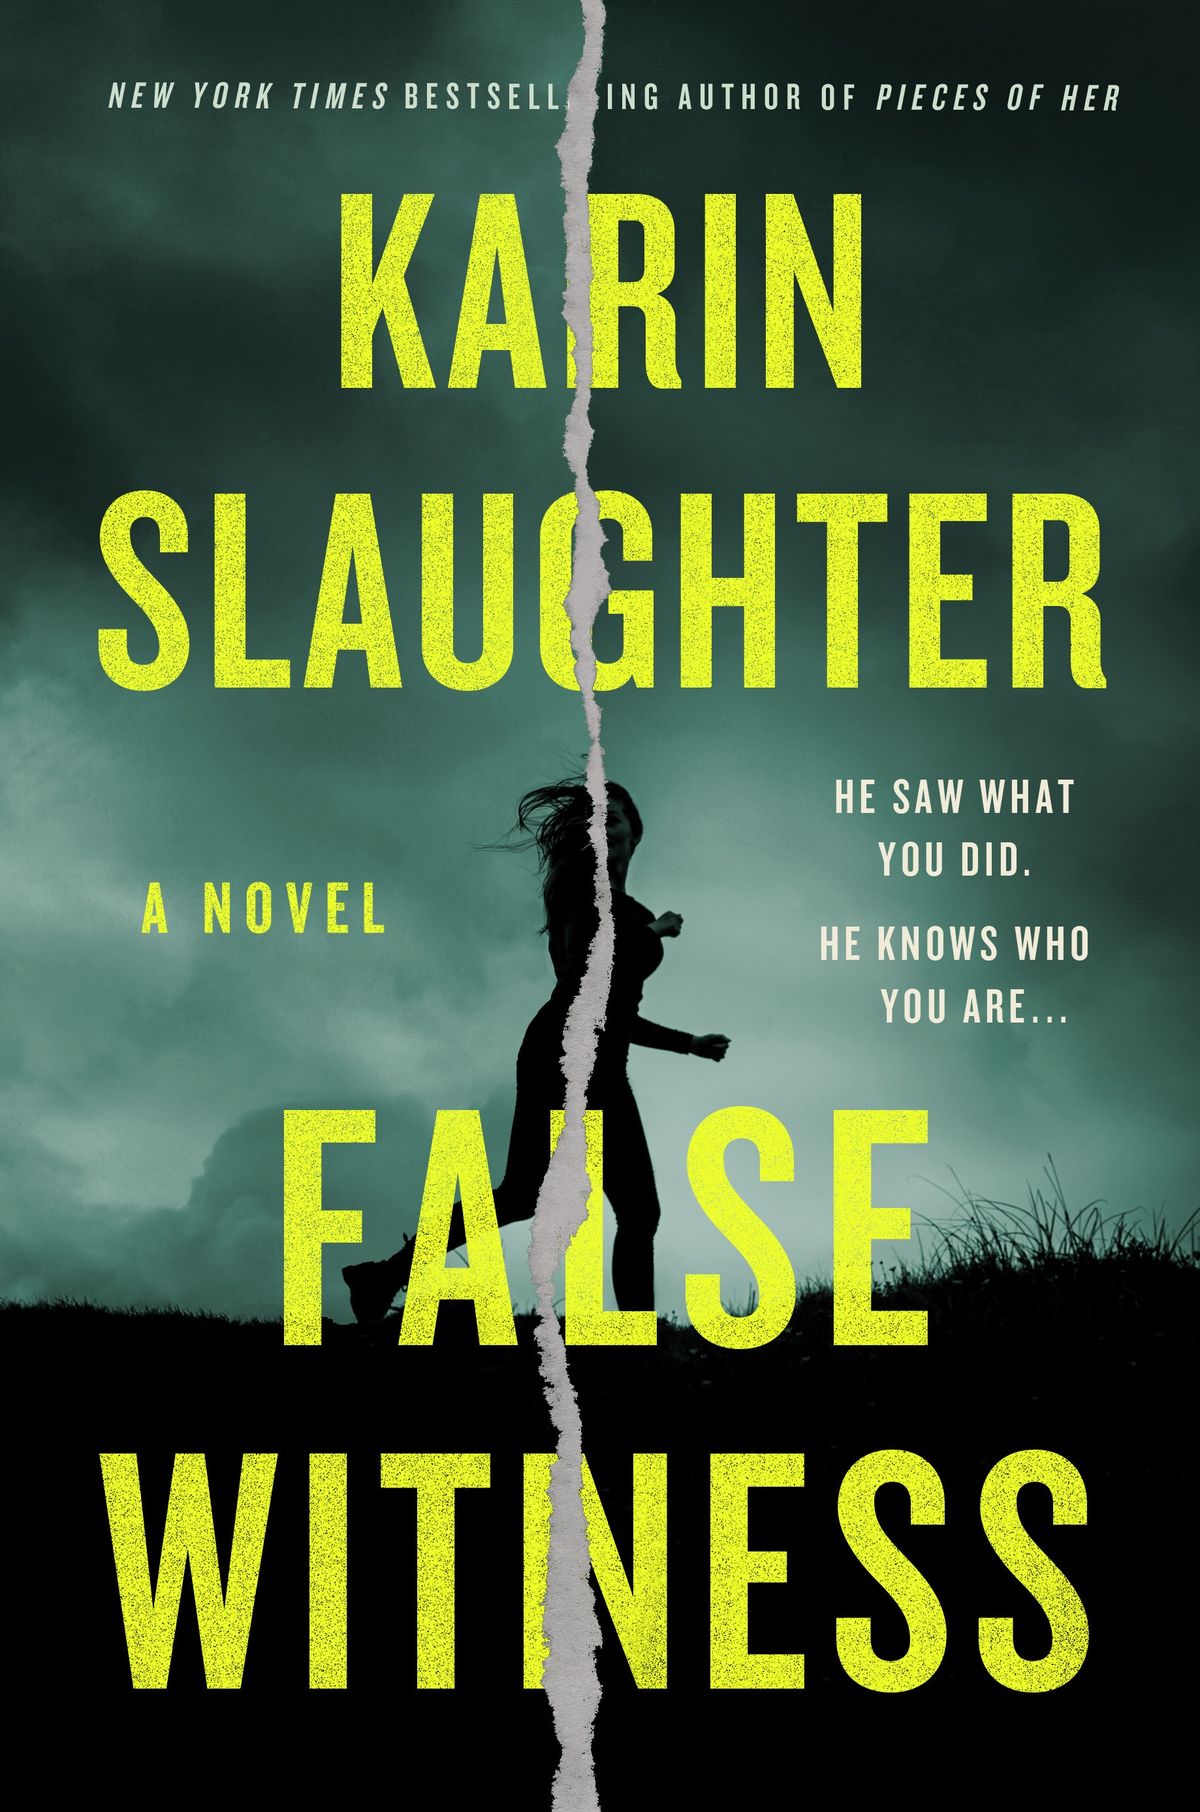 ¿Morir por continuar con el falso testimonio de Karin Slaughter? Sigue leyendo aquí mismo.